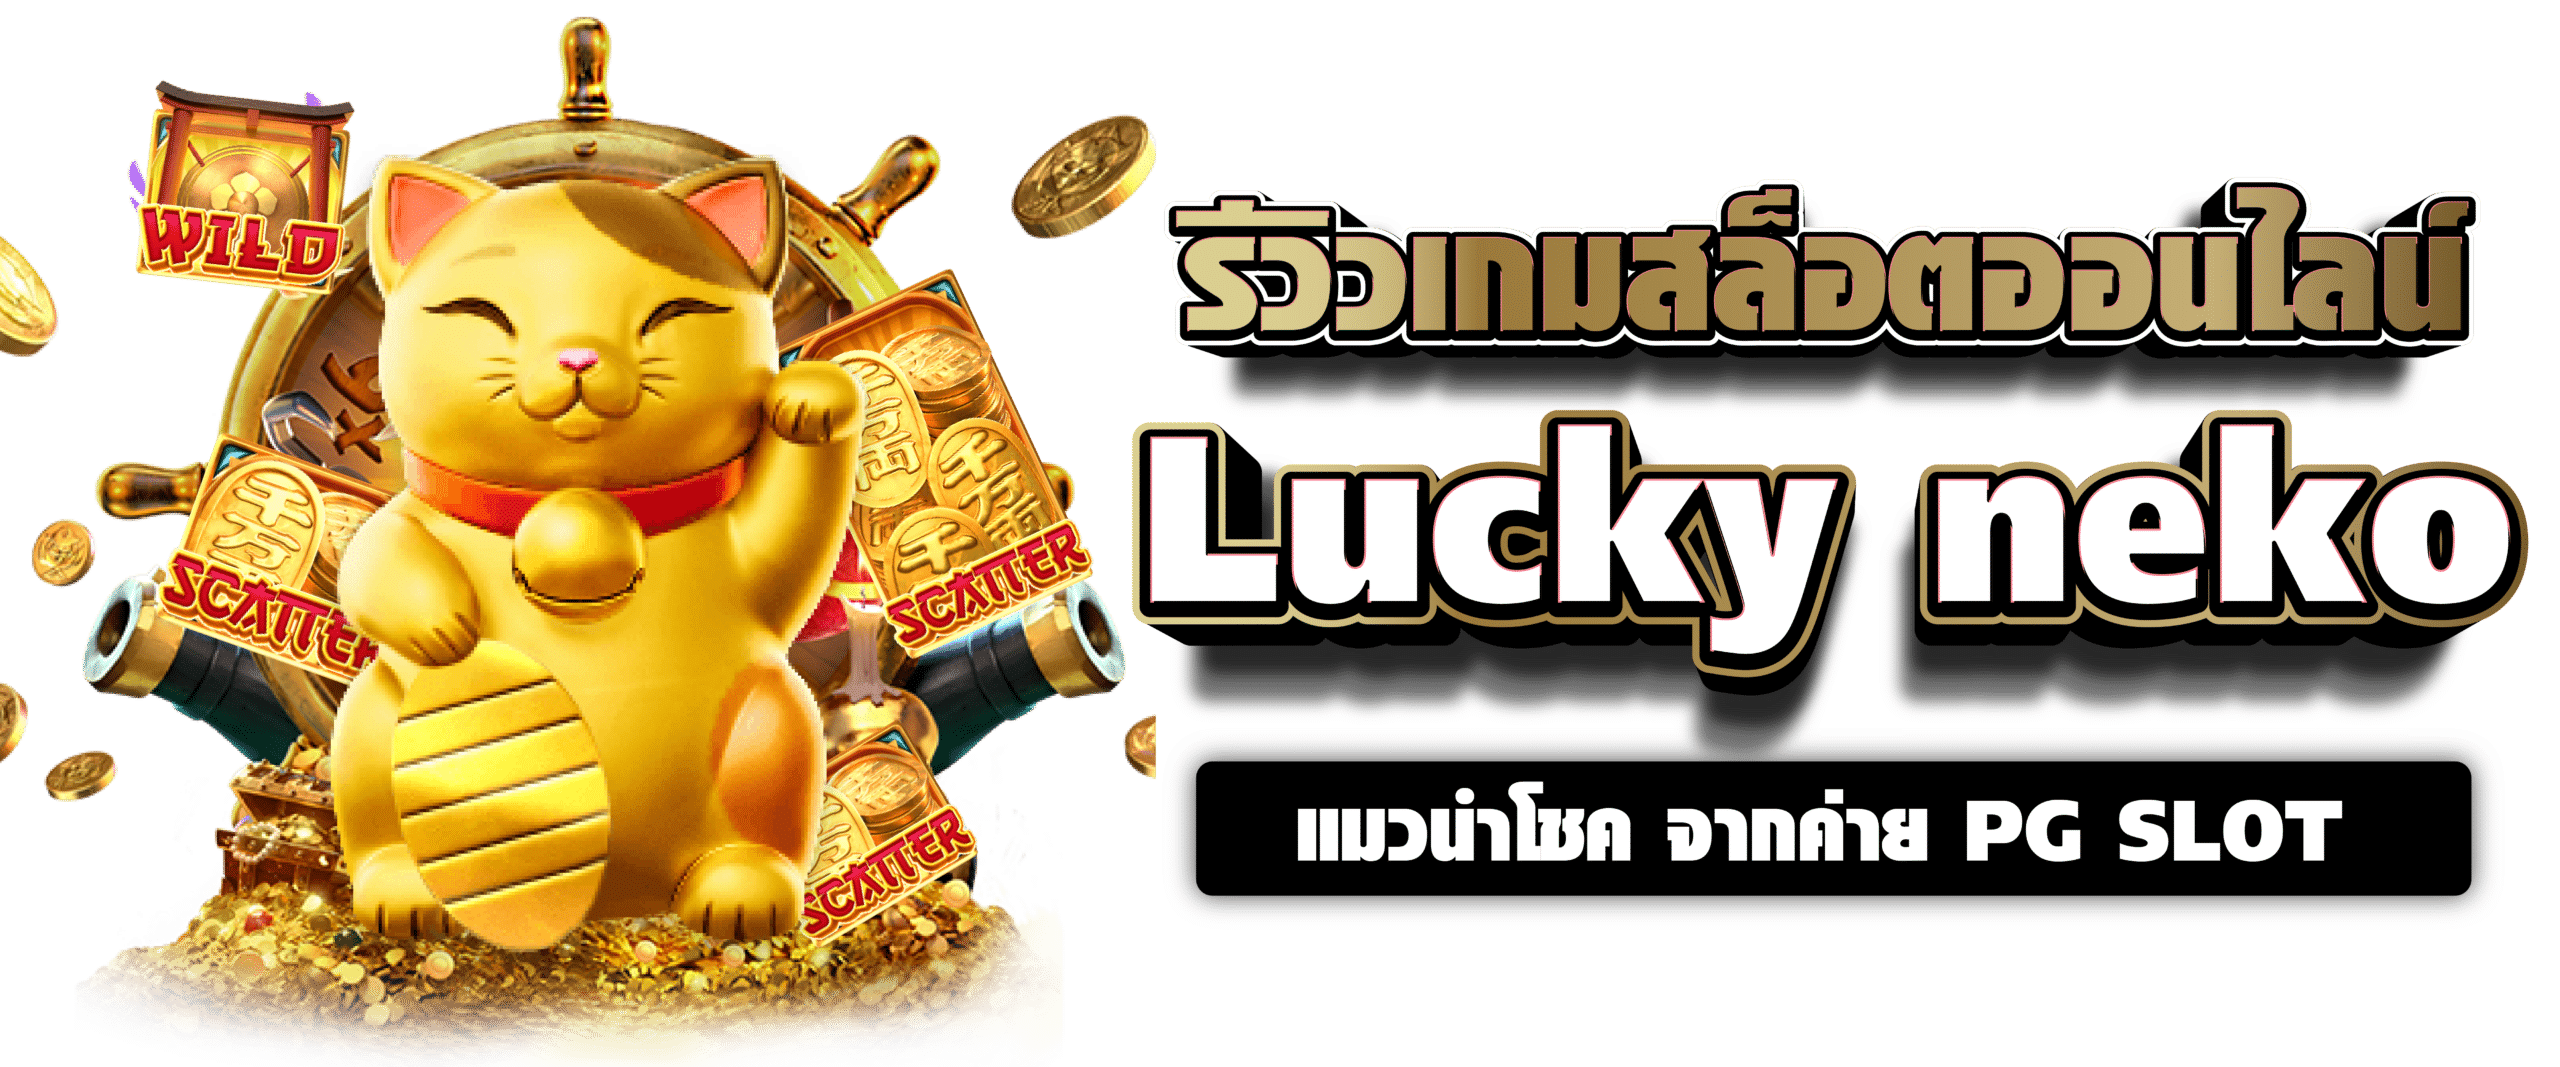 รีวิวเกมสล็อตออนไลน์ Lucky neko แมวนำโชค จากค่าย PG SLOT